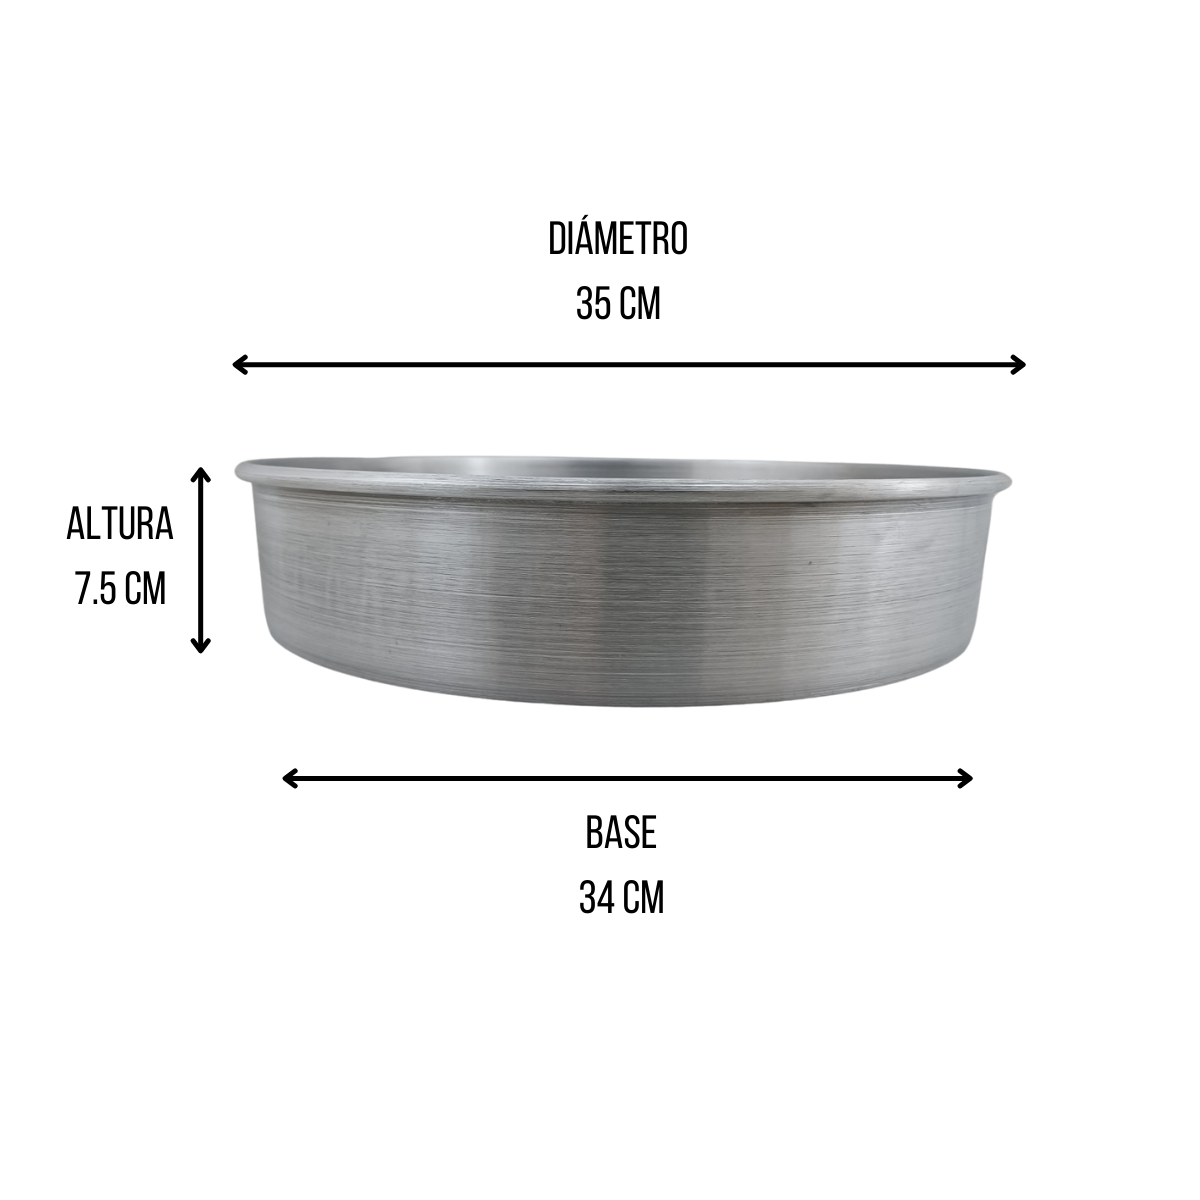 Molde de Aluminio 34 cm para repostería